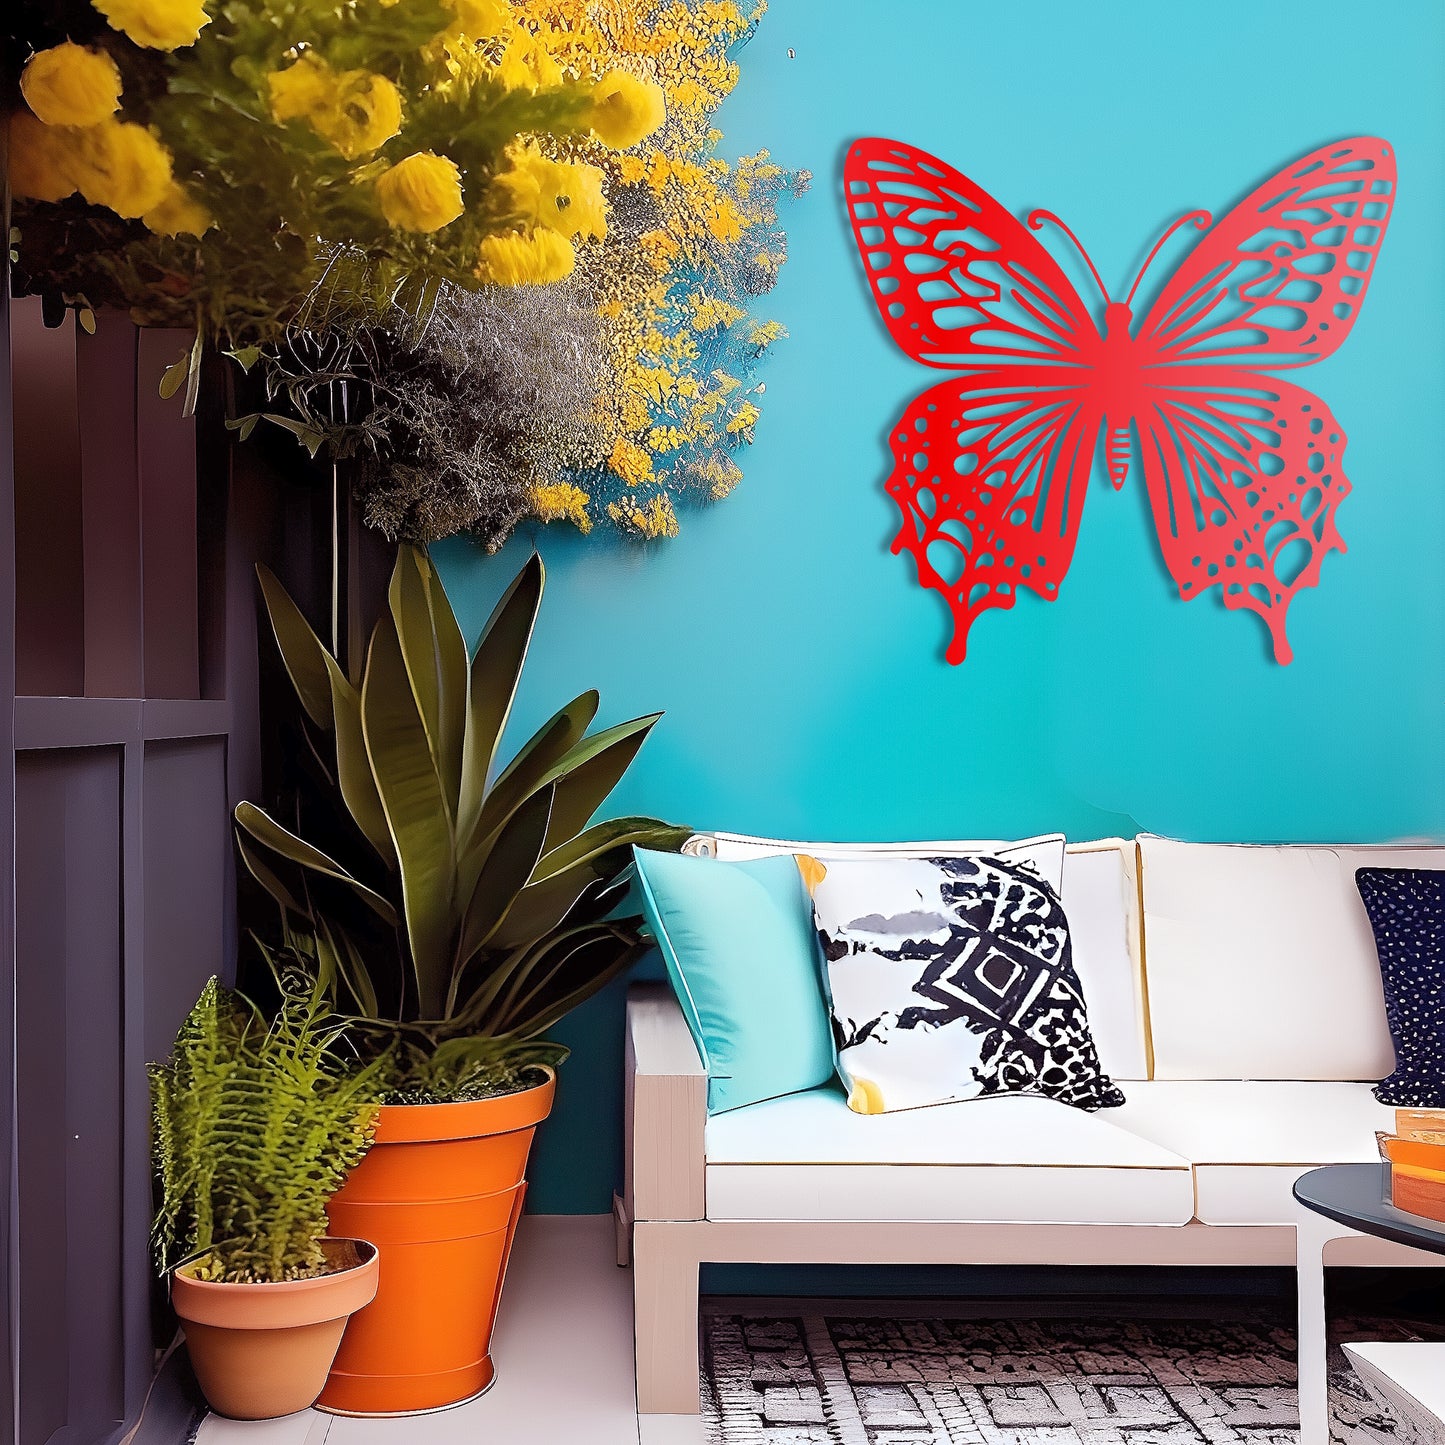 Mystical Wings Butterfly Metal Wall Art